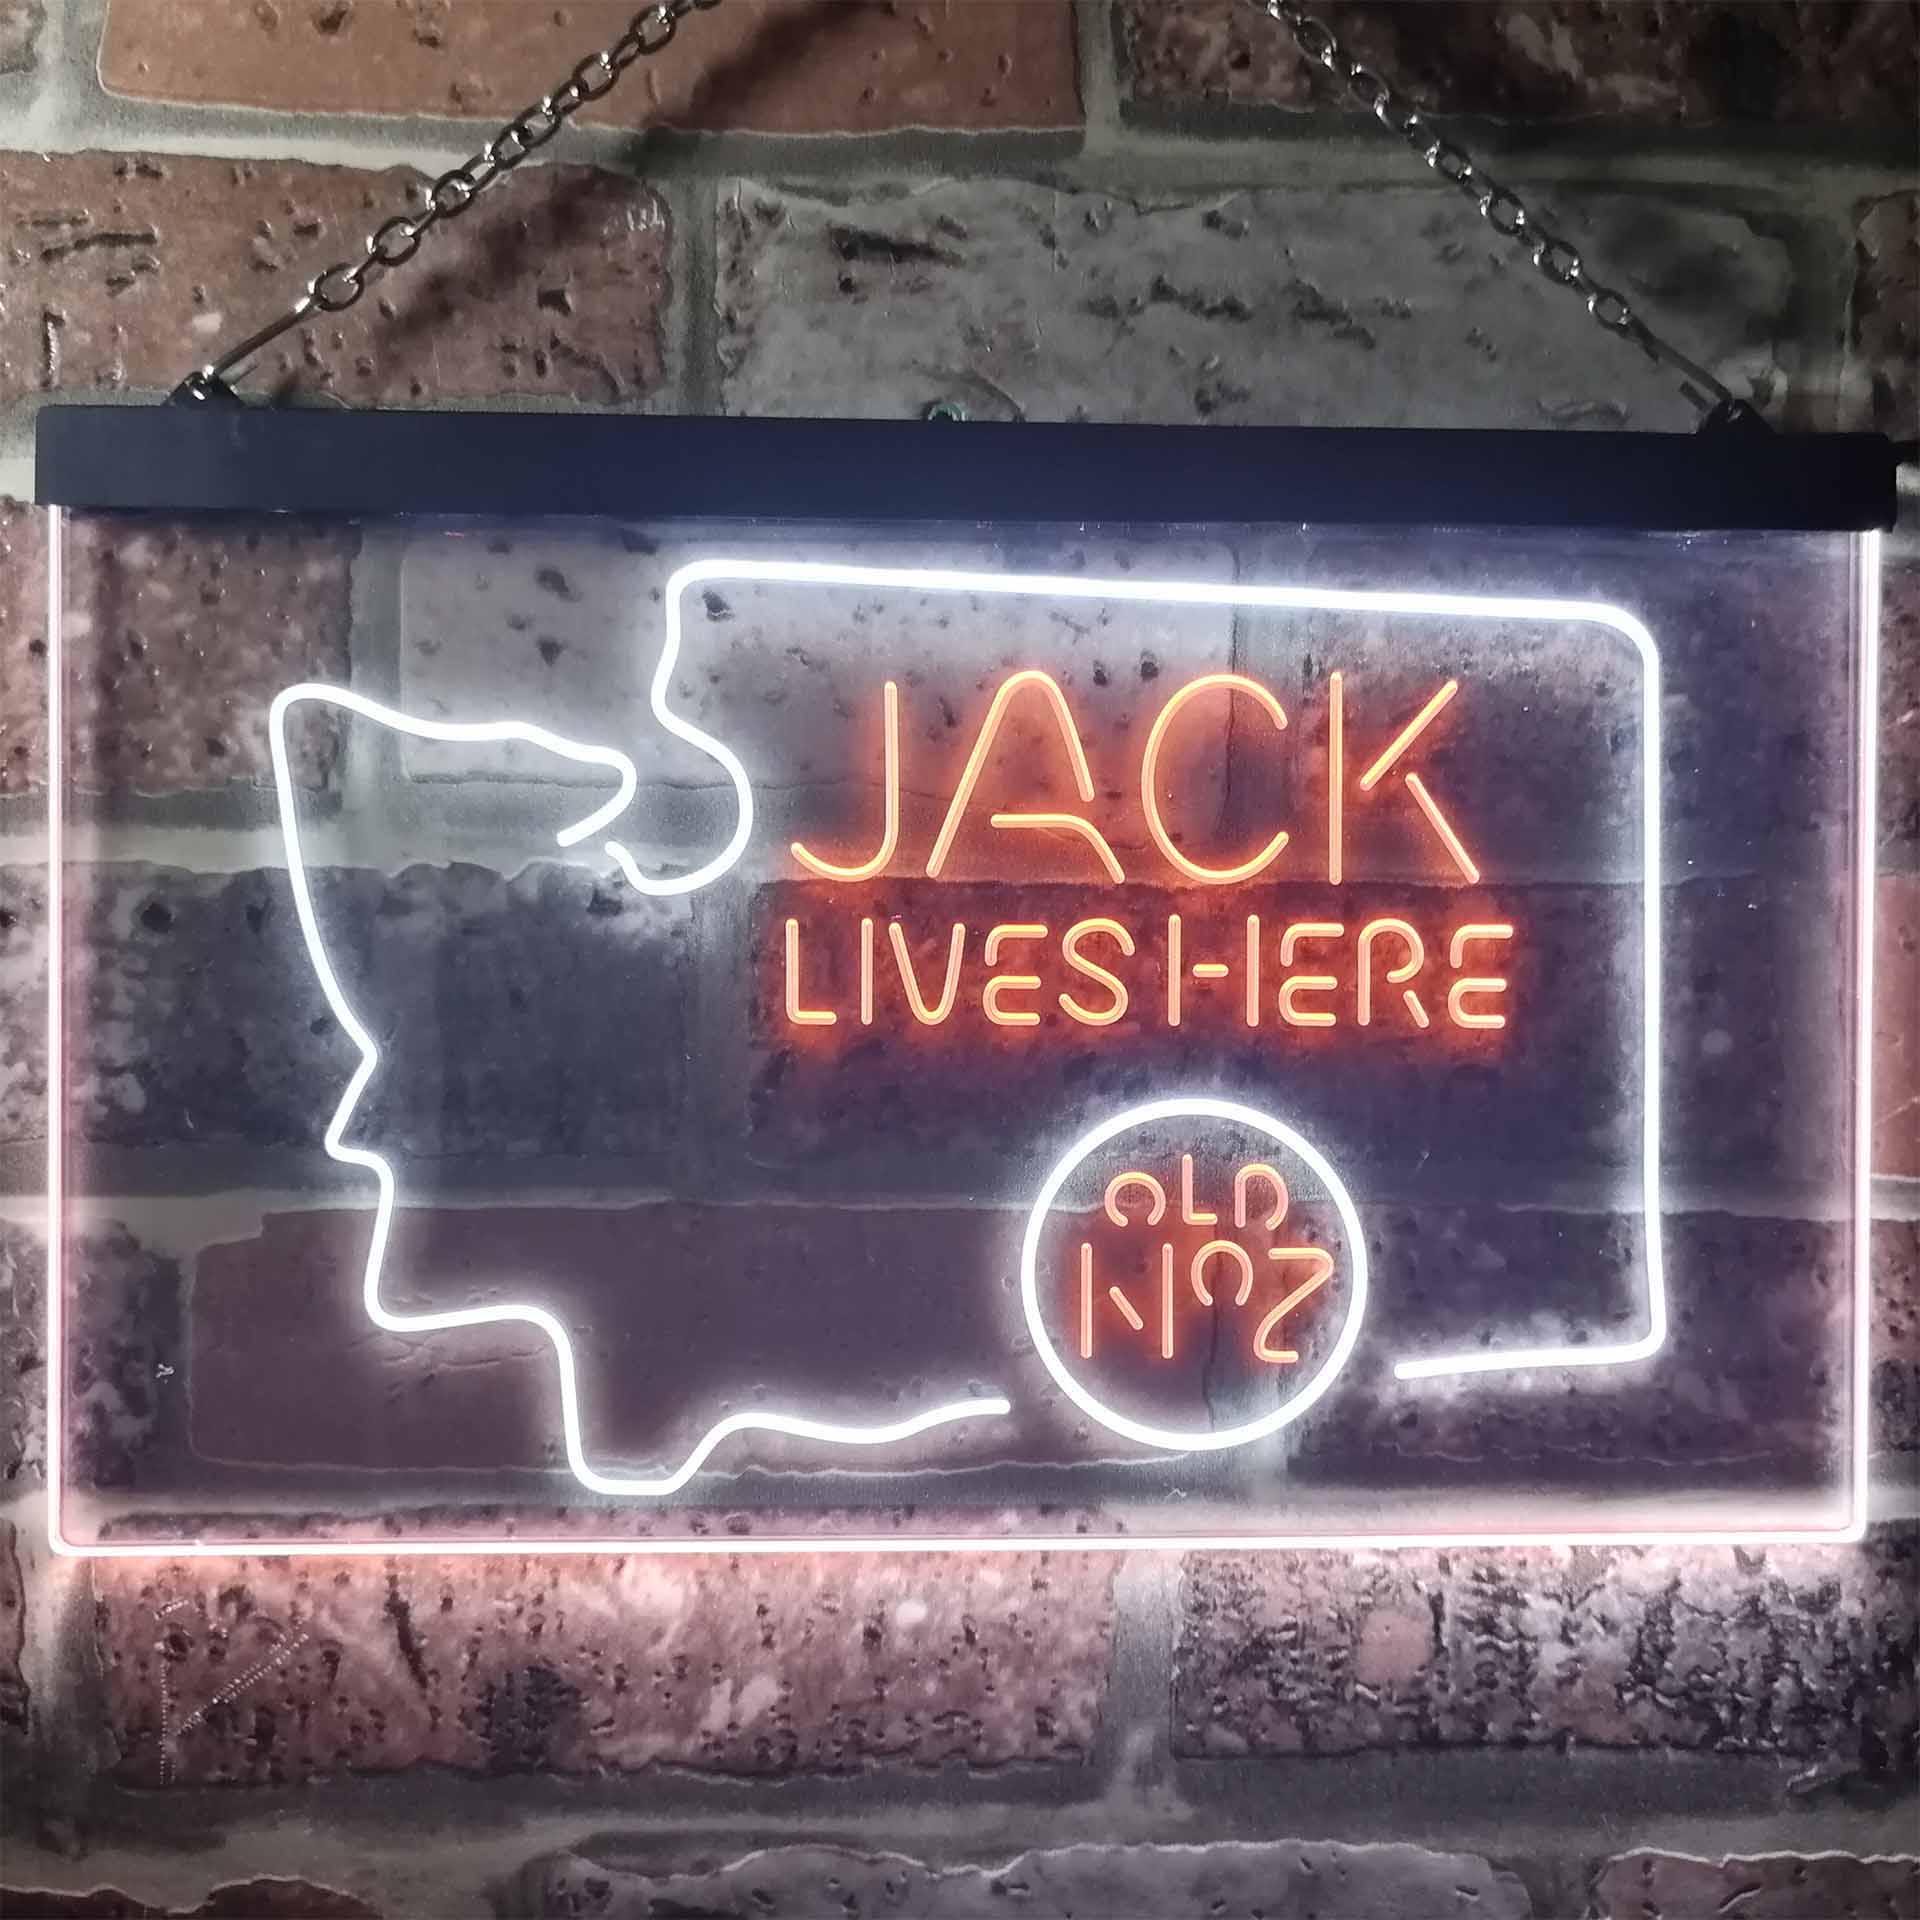 Washington Jack Lives Here LED Neon Sign